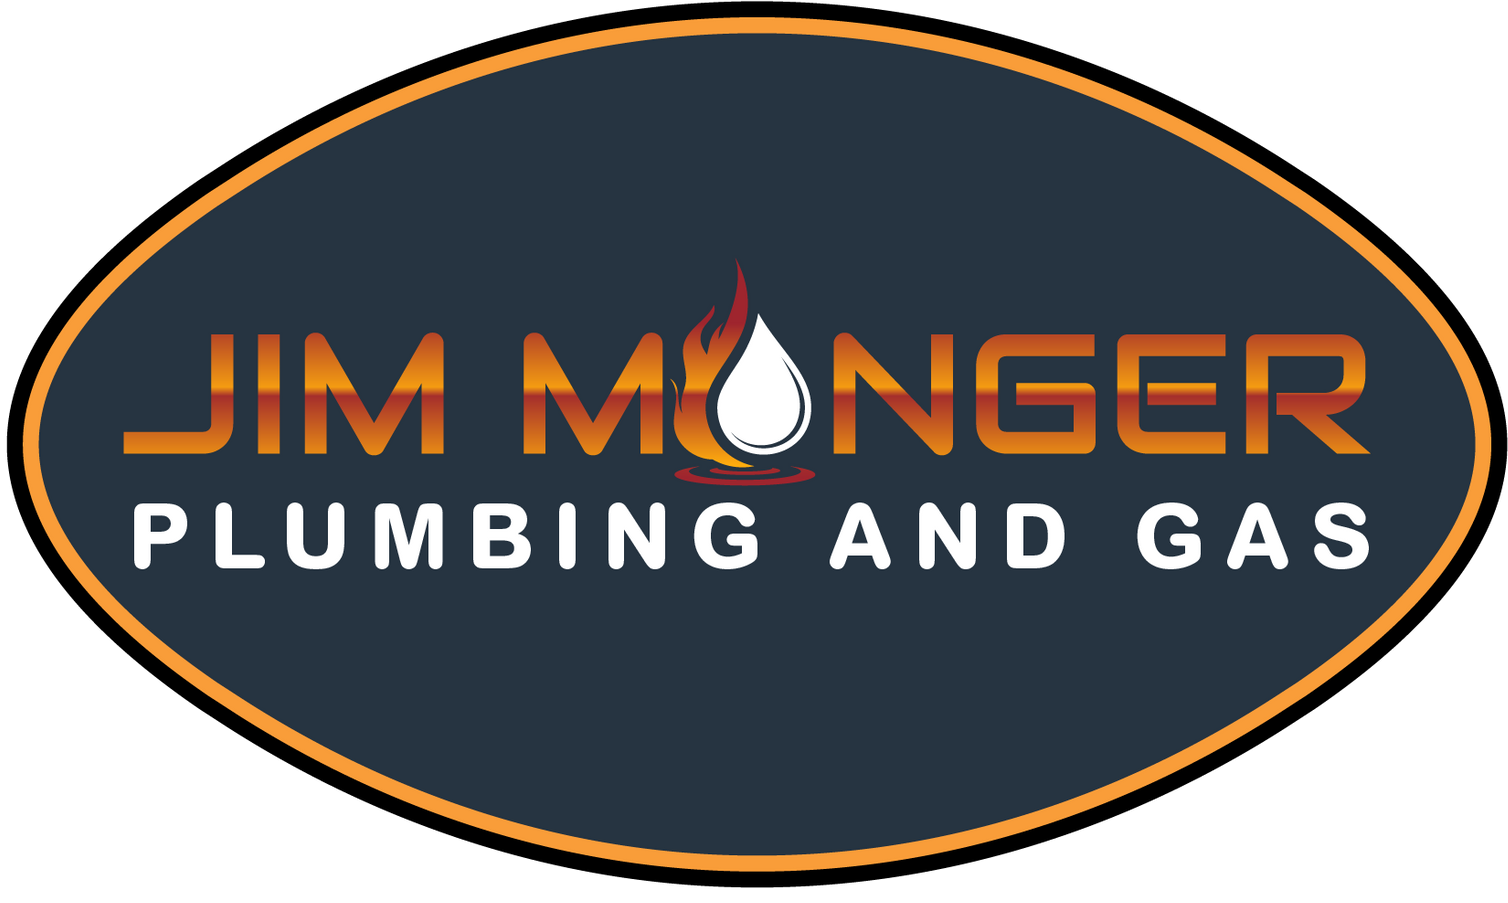 Jim Monger Plumbing and Gas